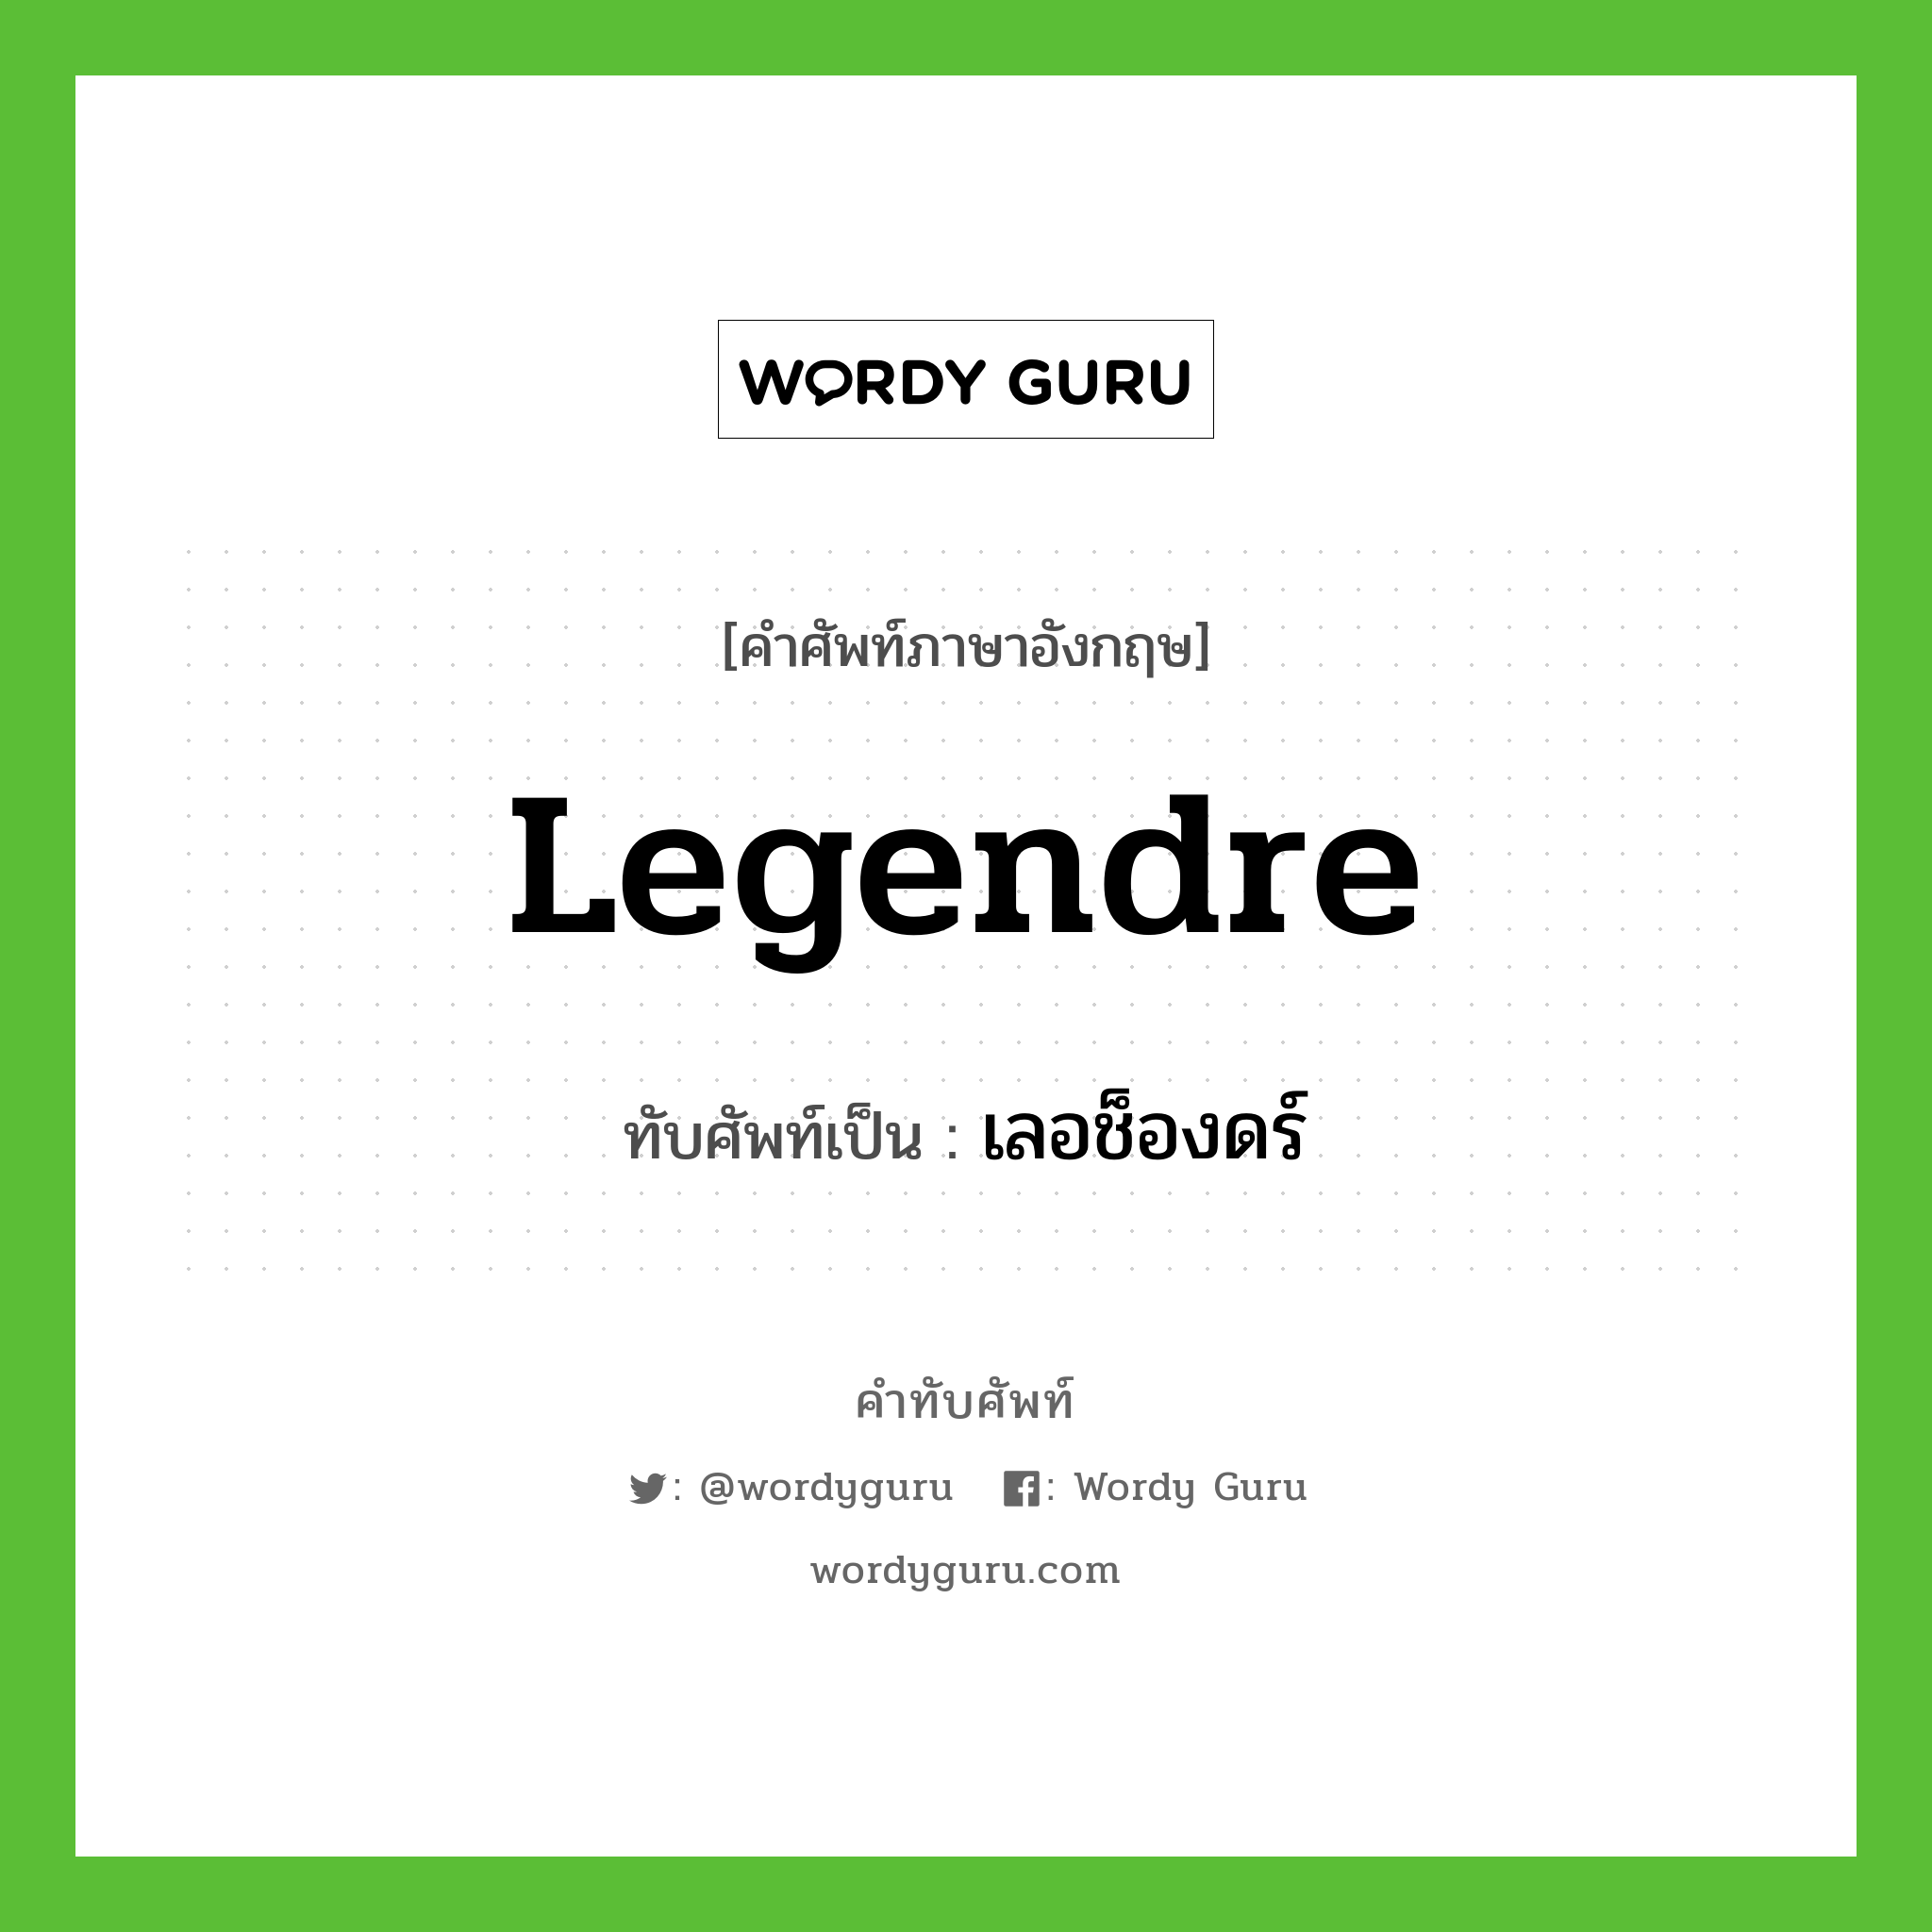 Legendre เขียนเป็นคำไทยว่าอะไร?, คำศัพท์ภาษาอังกฤษ Legendre ทับศัพท์เป็น เลอช็องดร์